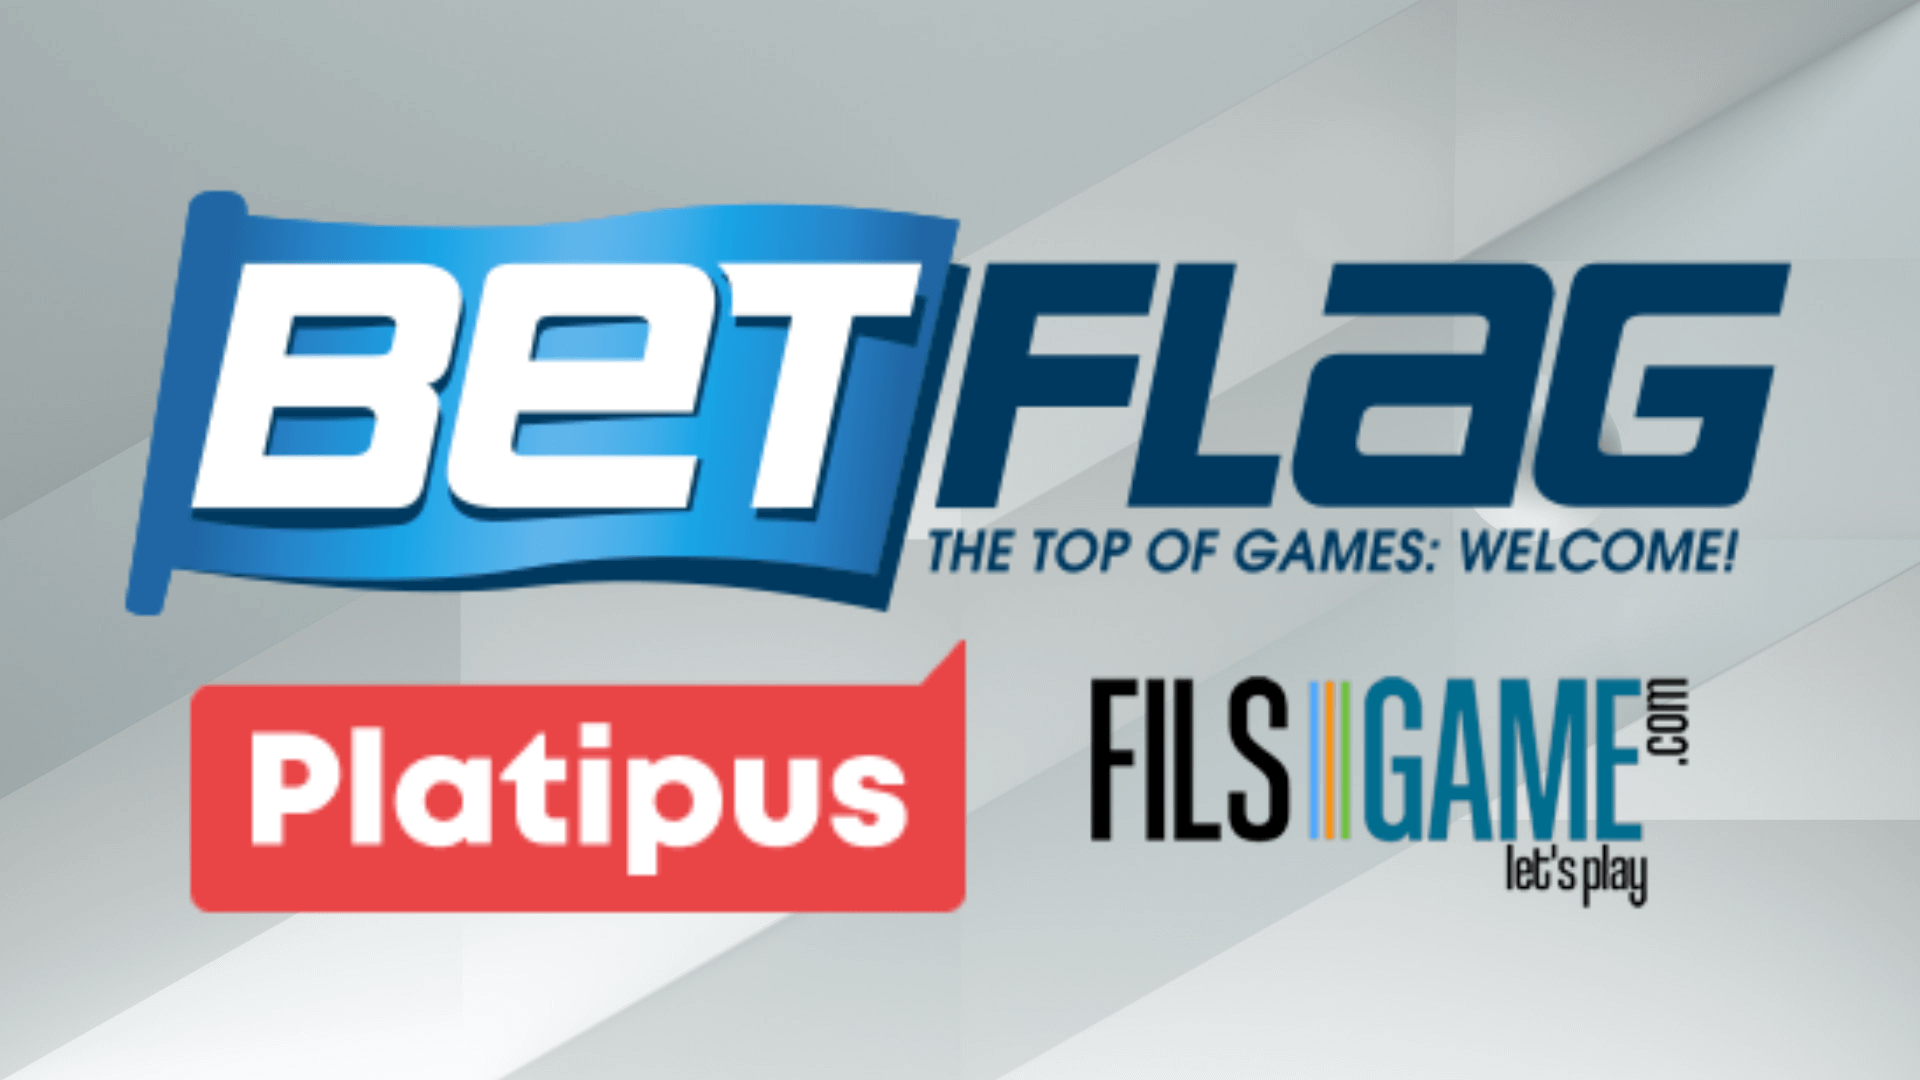 BetFlag ad aprile punta sull’innovazione: Platipus e FilsGame portano 72 nuovi giochi